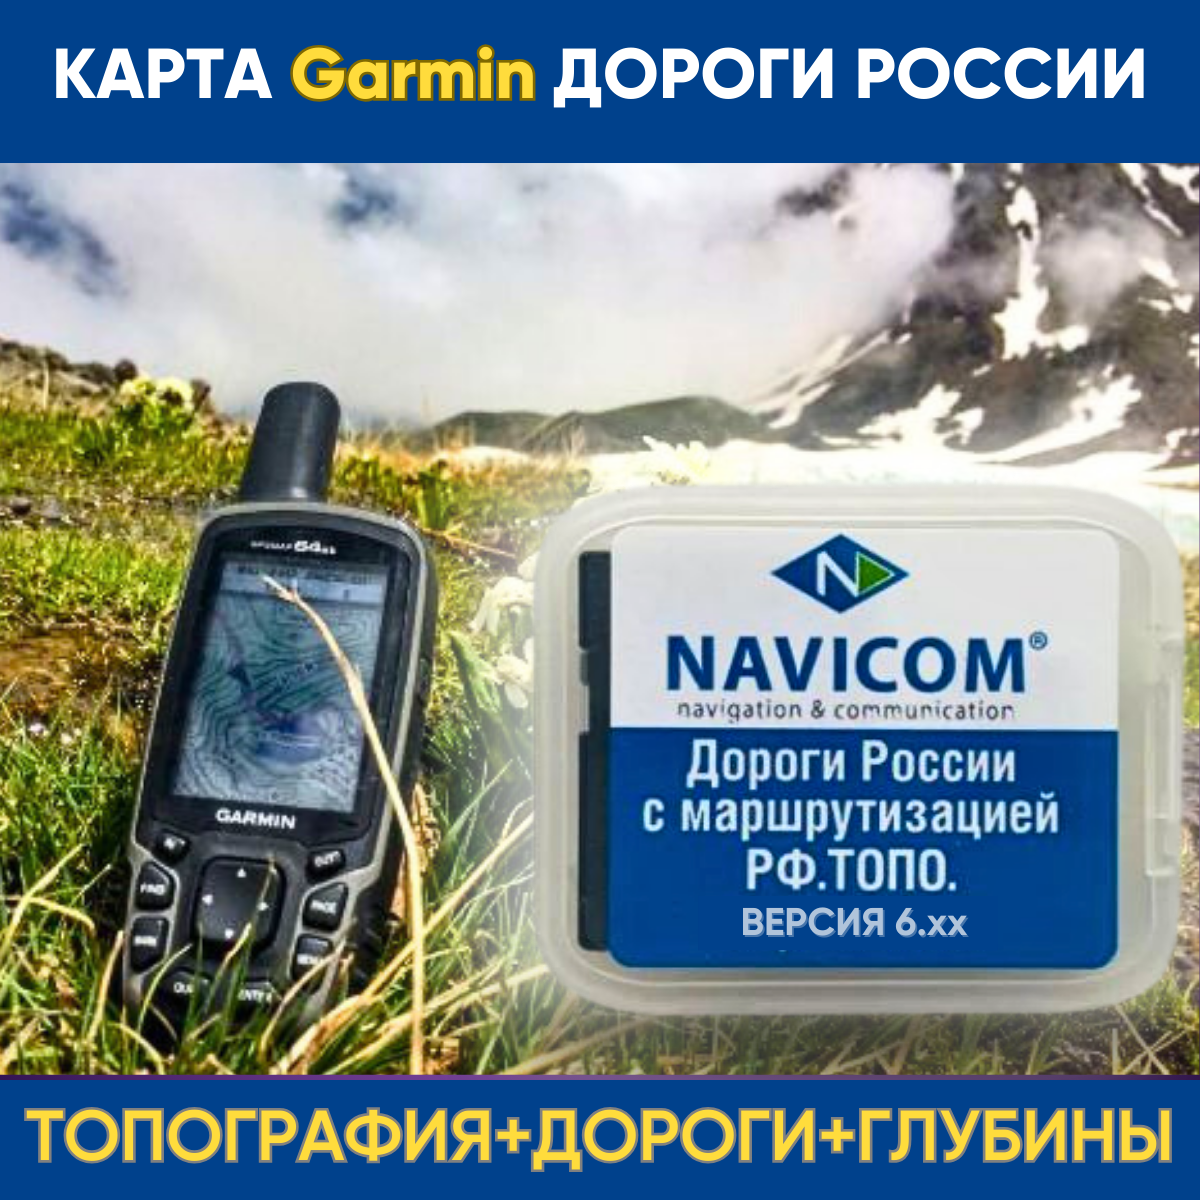 Карта Garmin Дороги России. Топо на MicroSD (Версия 6.44 new) Navicom